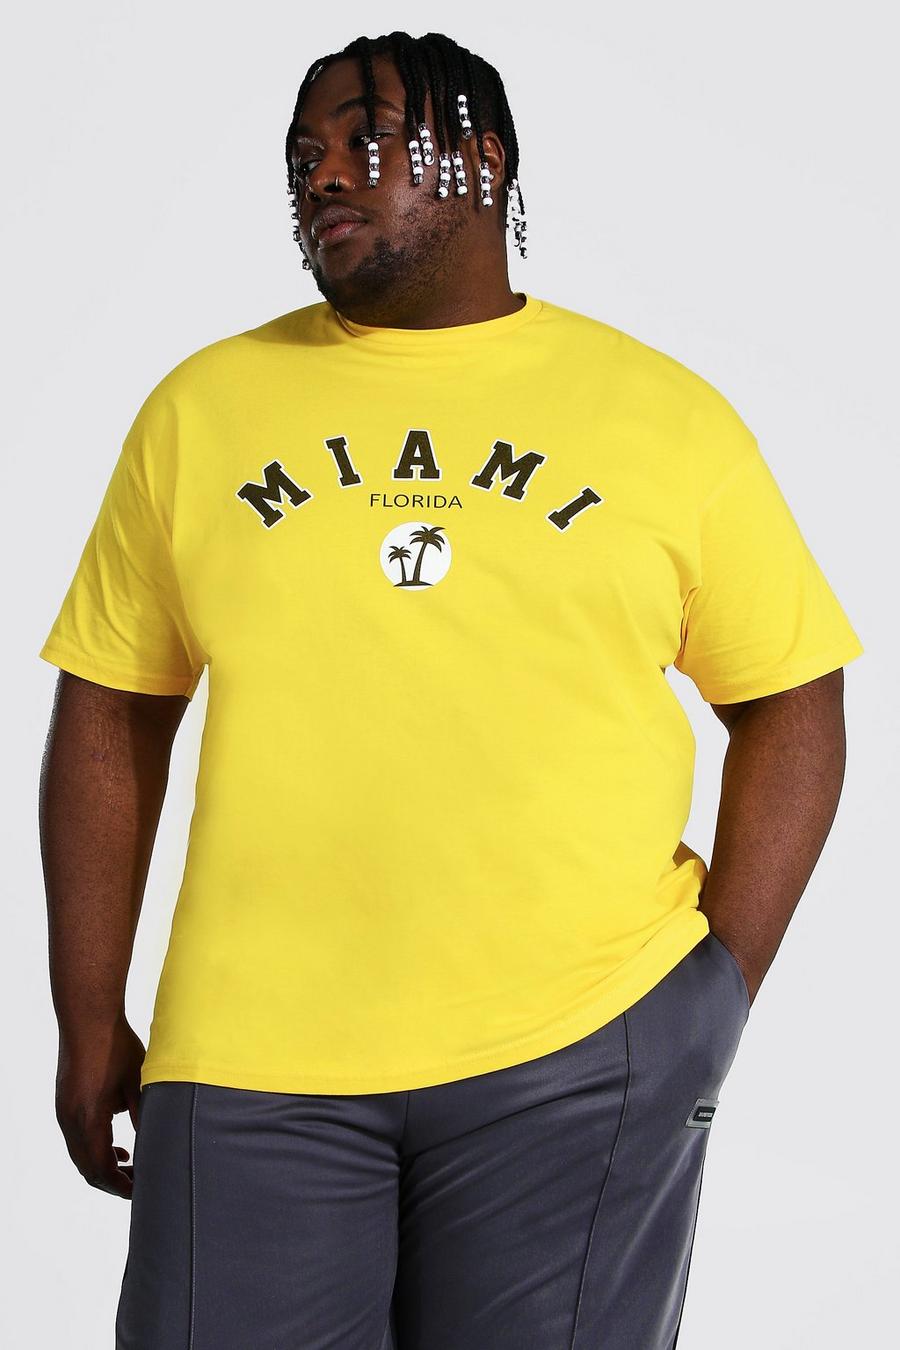 צהוב amarillo טישרט עם הדפס נבחרת ספורט Miami למידות גדולות image number 1